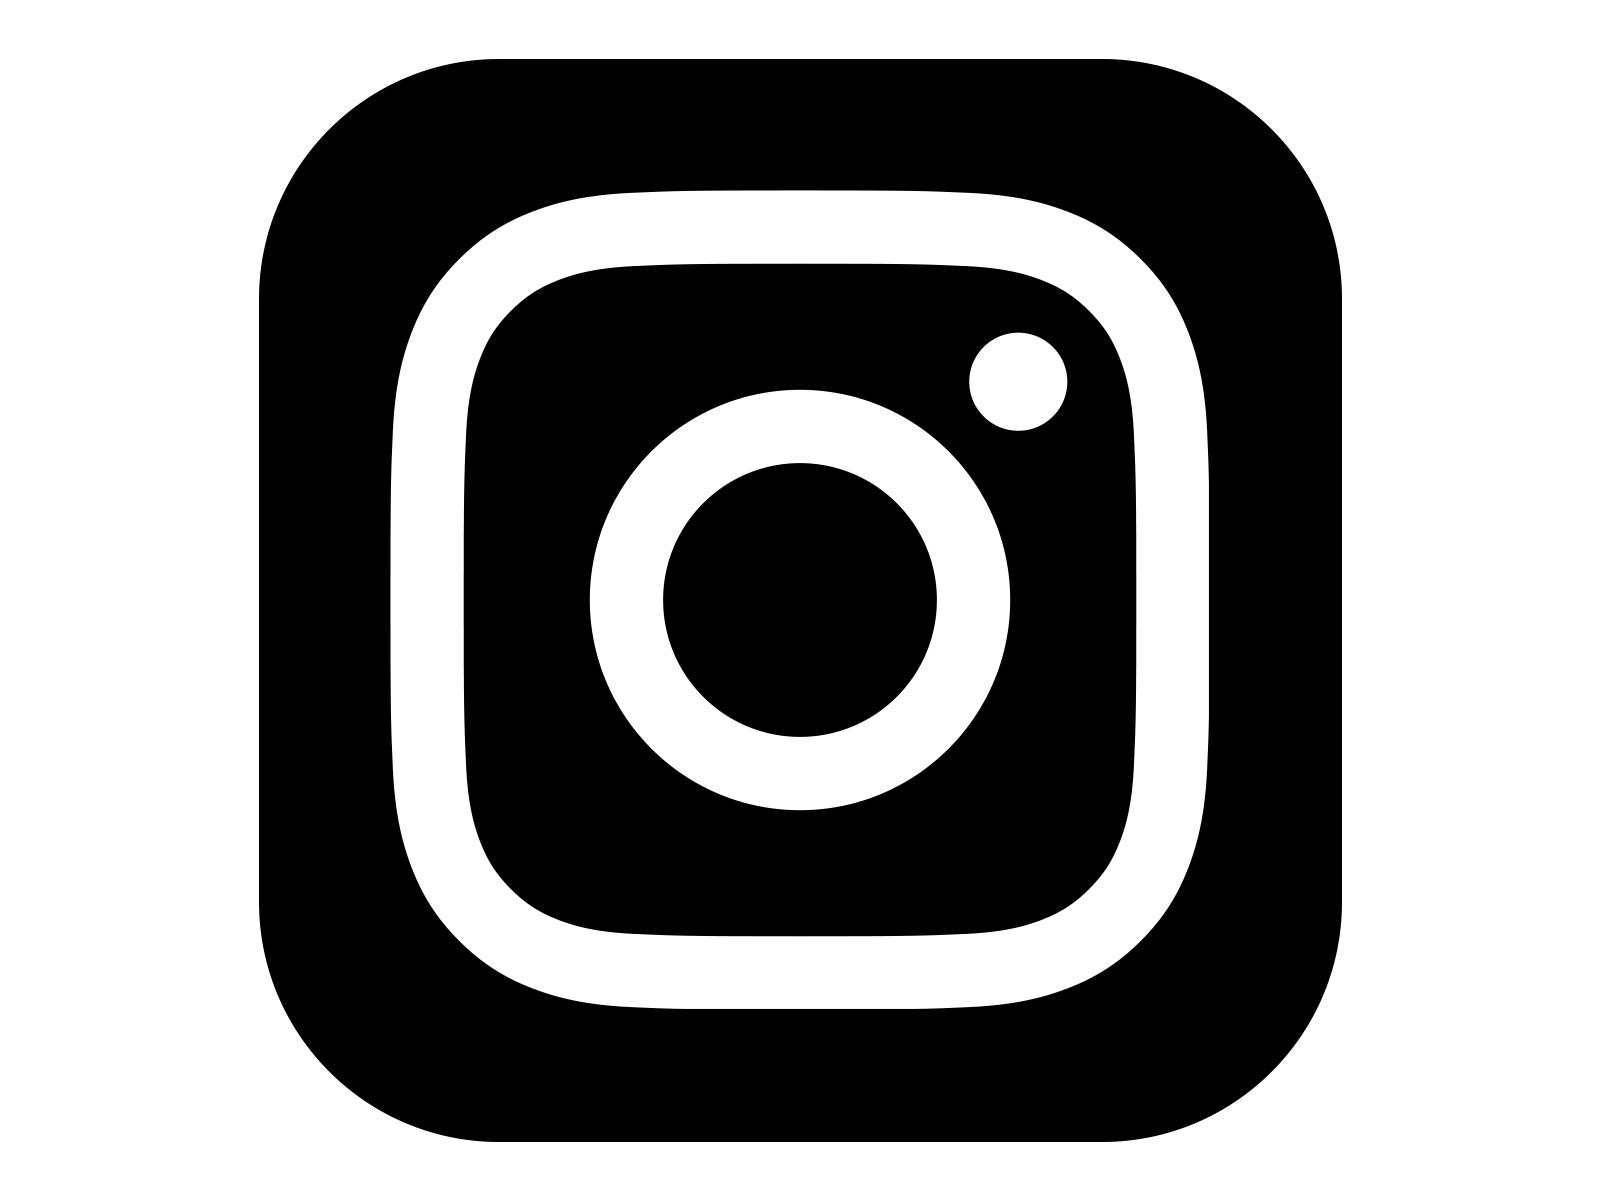 Google White Logo - Instagram App Black And White Logo Png Image